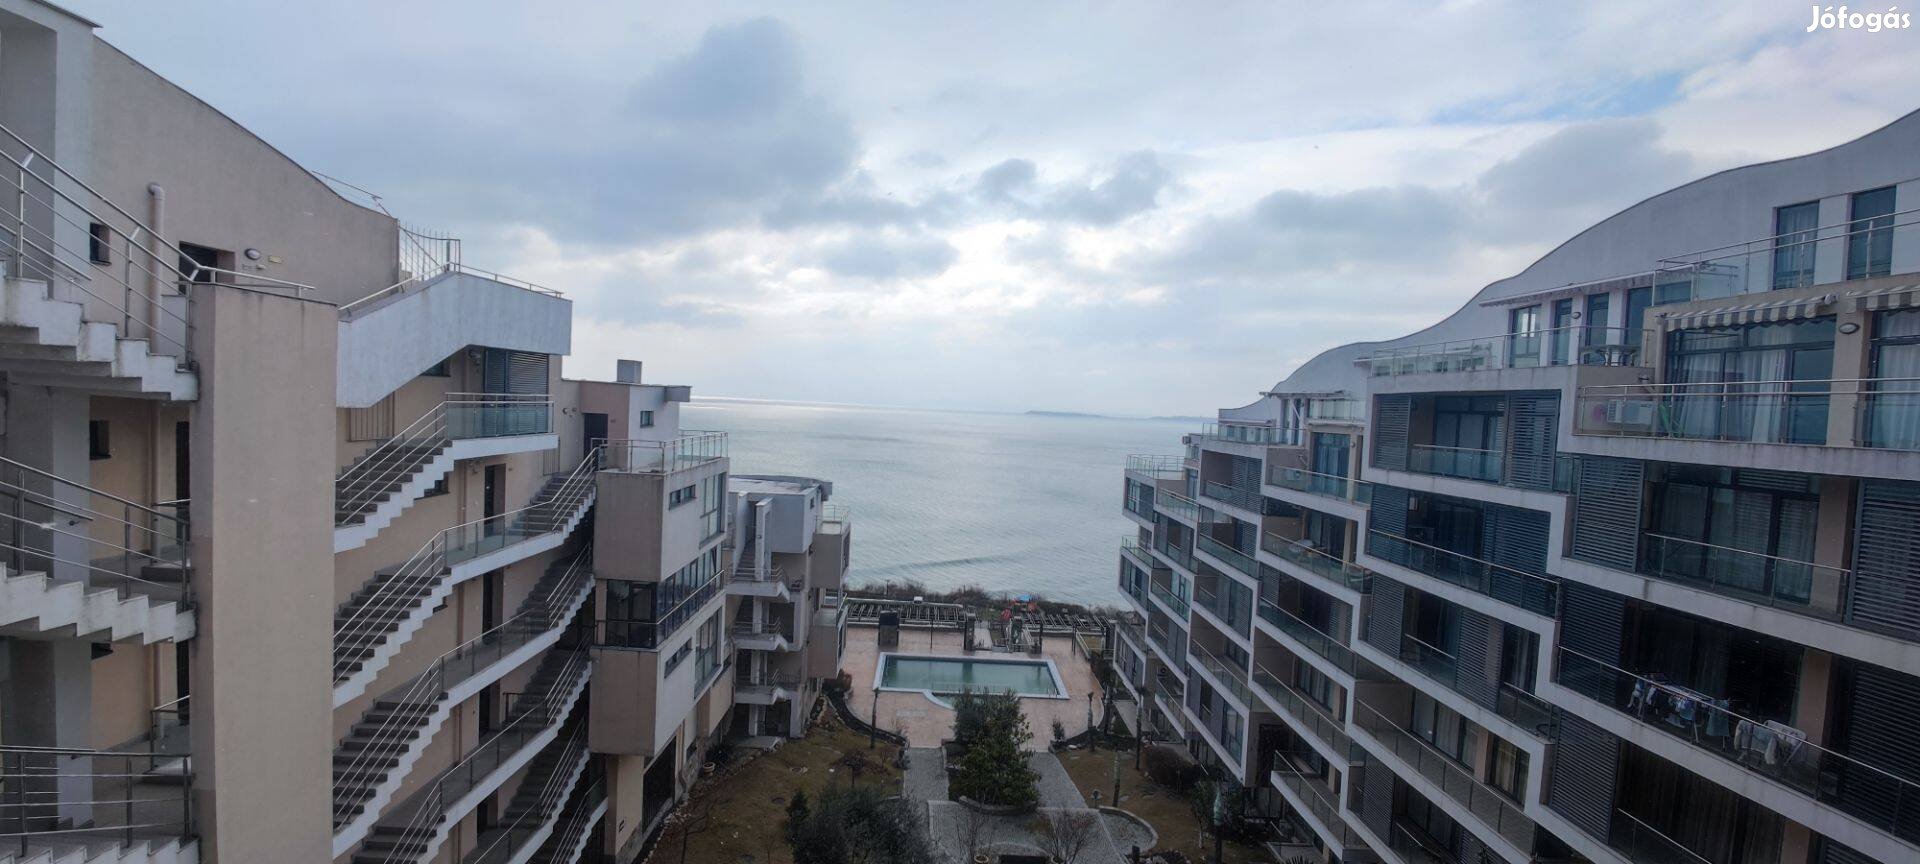 Eladó Bolgár tengerparti Dolce Vita2 szobás lakás, nyaraló övezetben